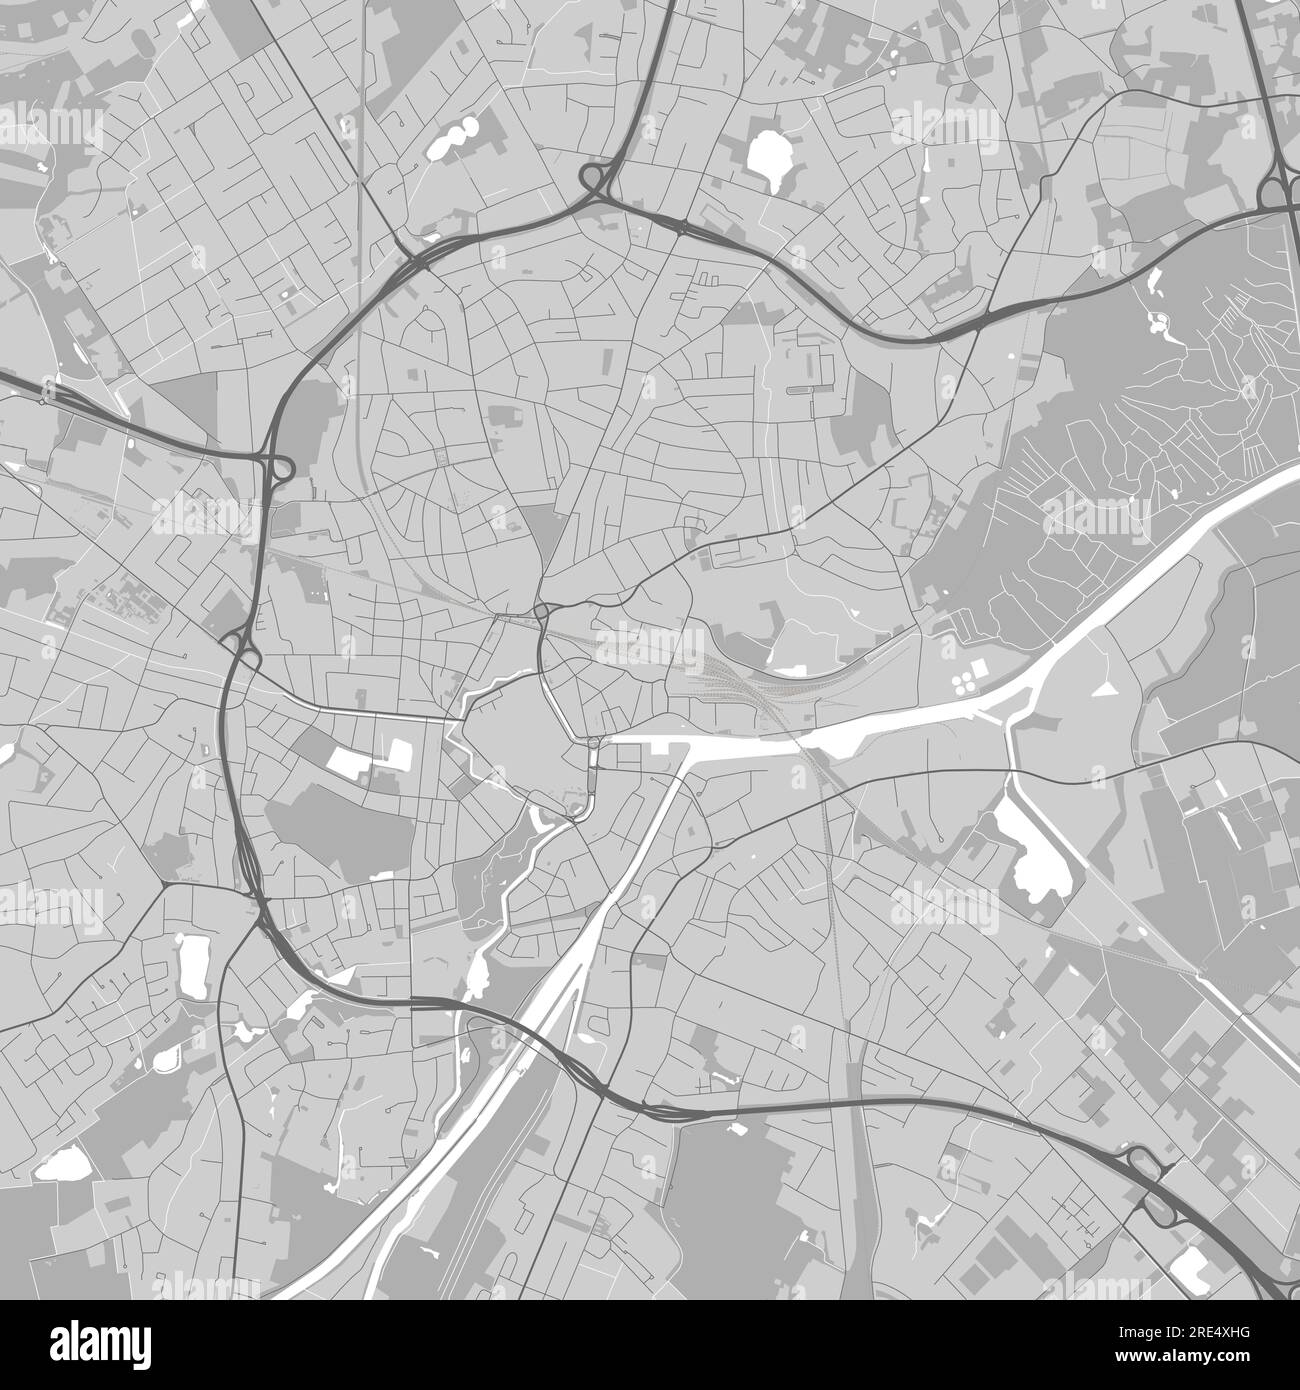 Hintergrundkarte von Oldenburg, Stadtgebiet Stock Vektor